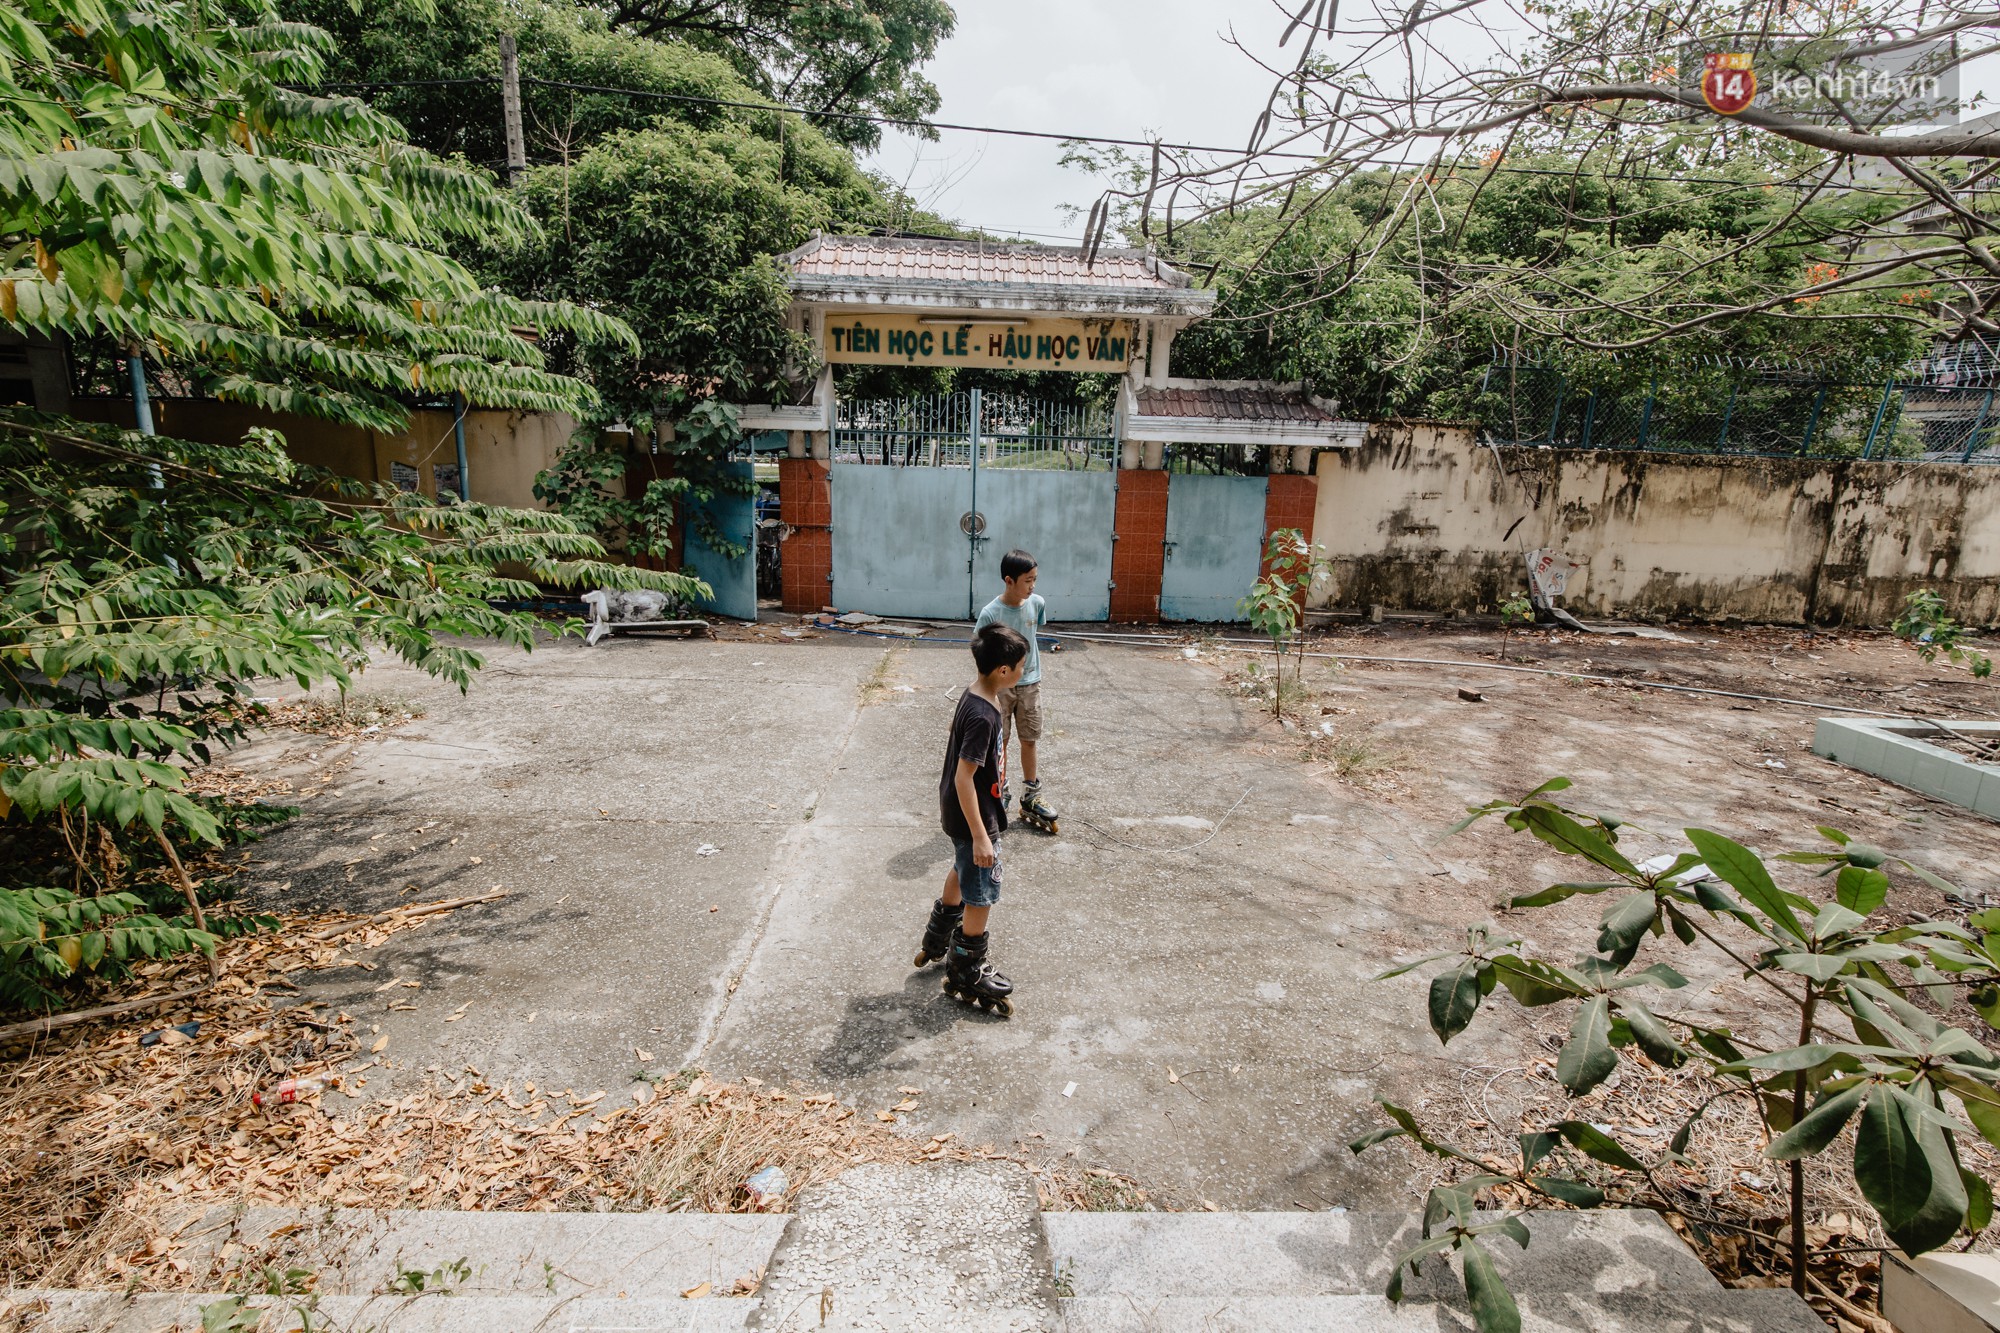 Khung cảnh rợn người bên trong trường học 40 năm tuổi bị bỏ hoang tại Sài Gòn - Ảnh 15.